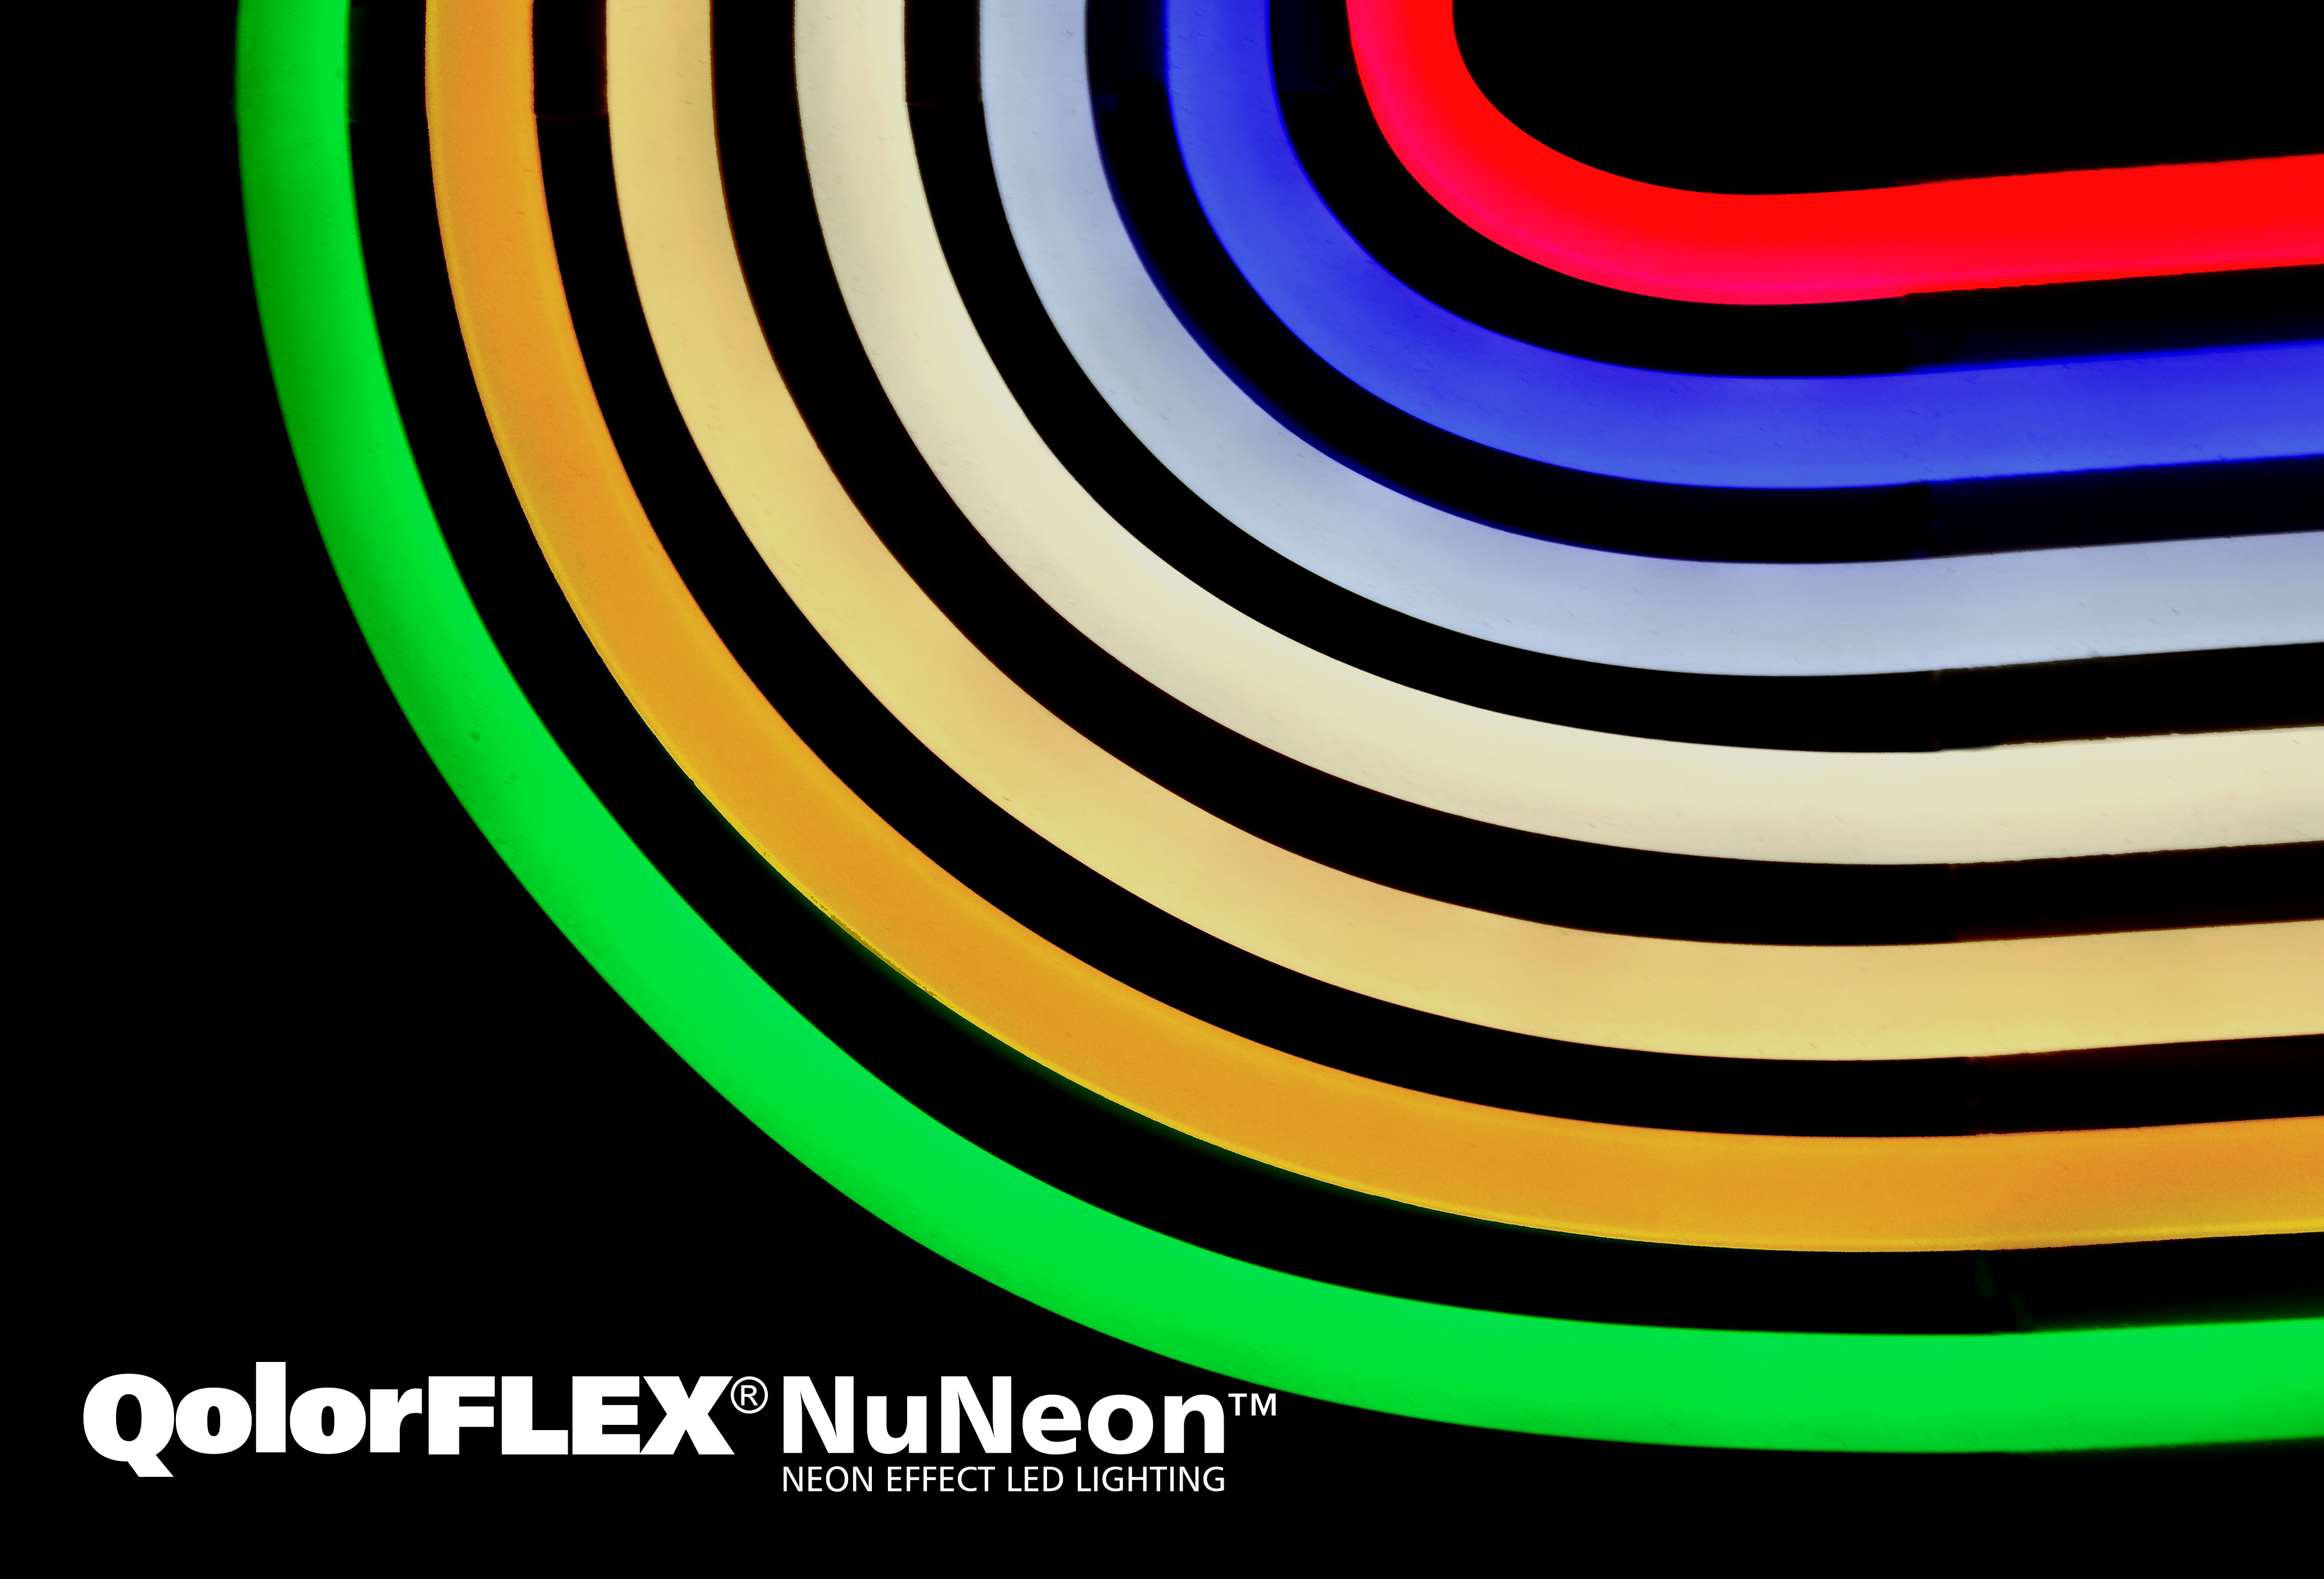 QolorFLEX NuNeon colours